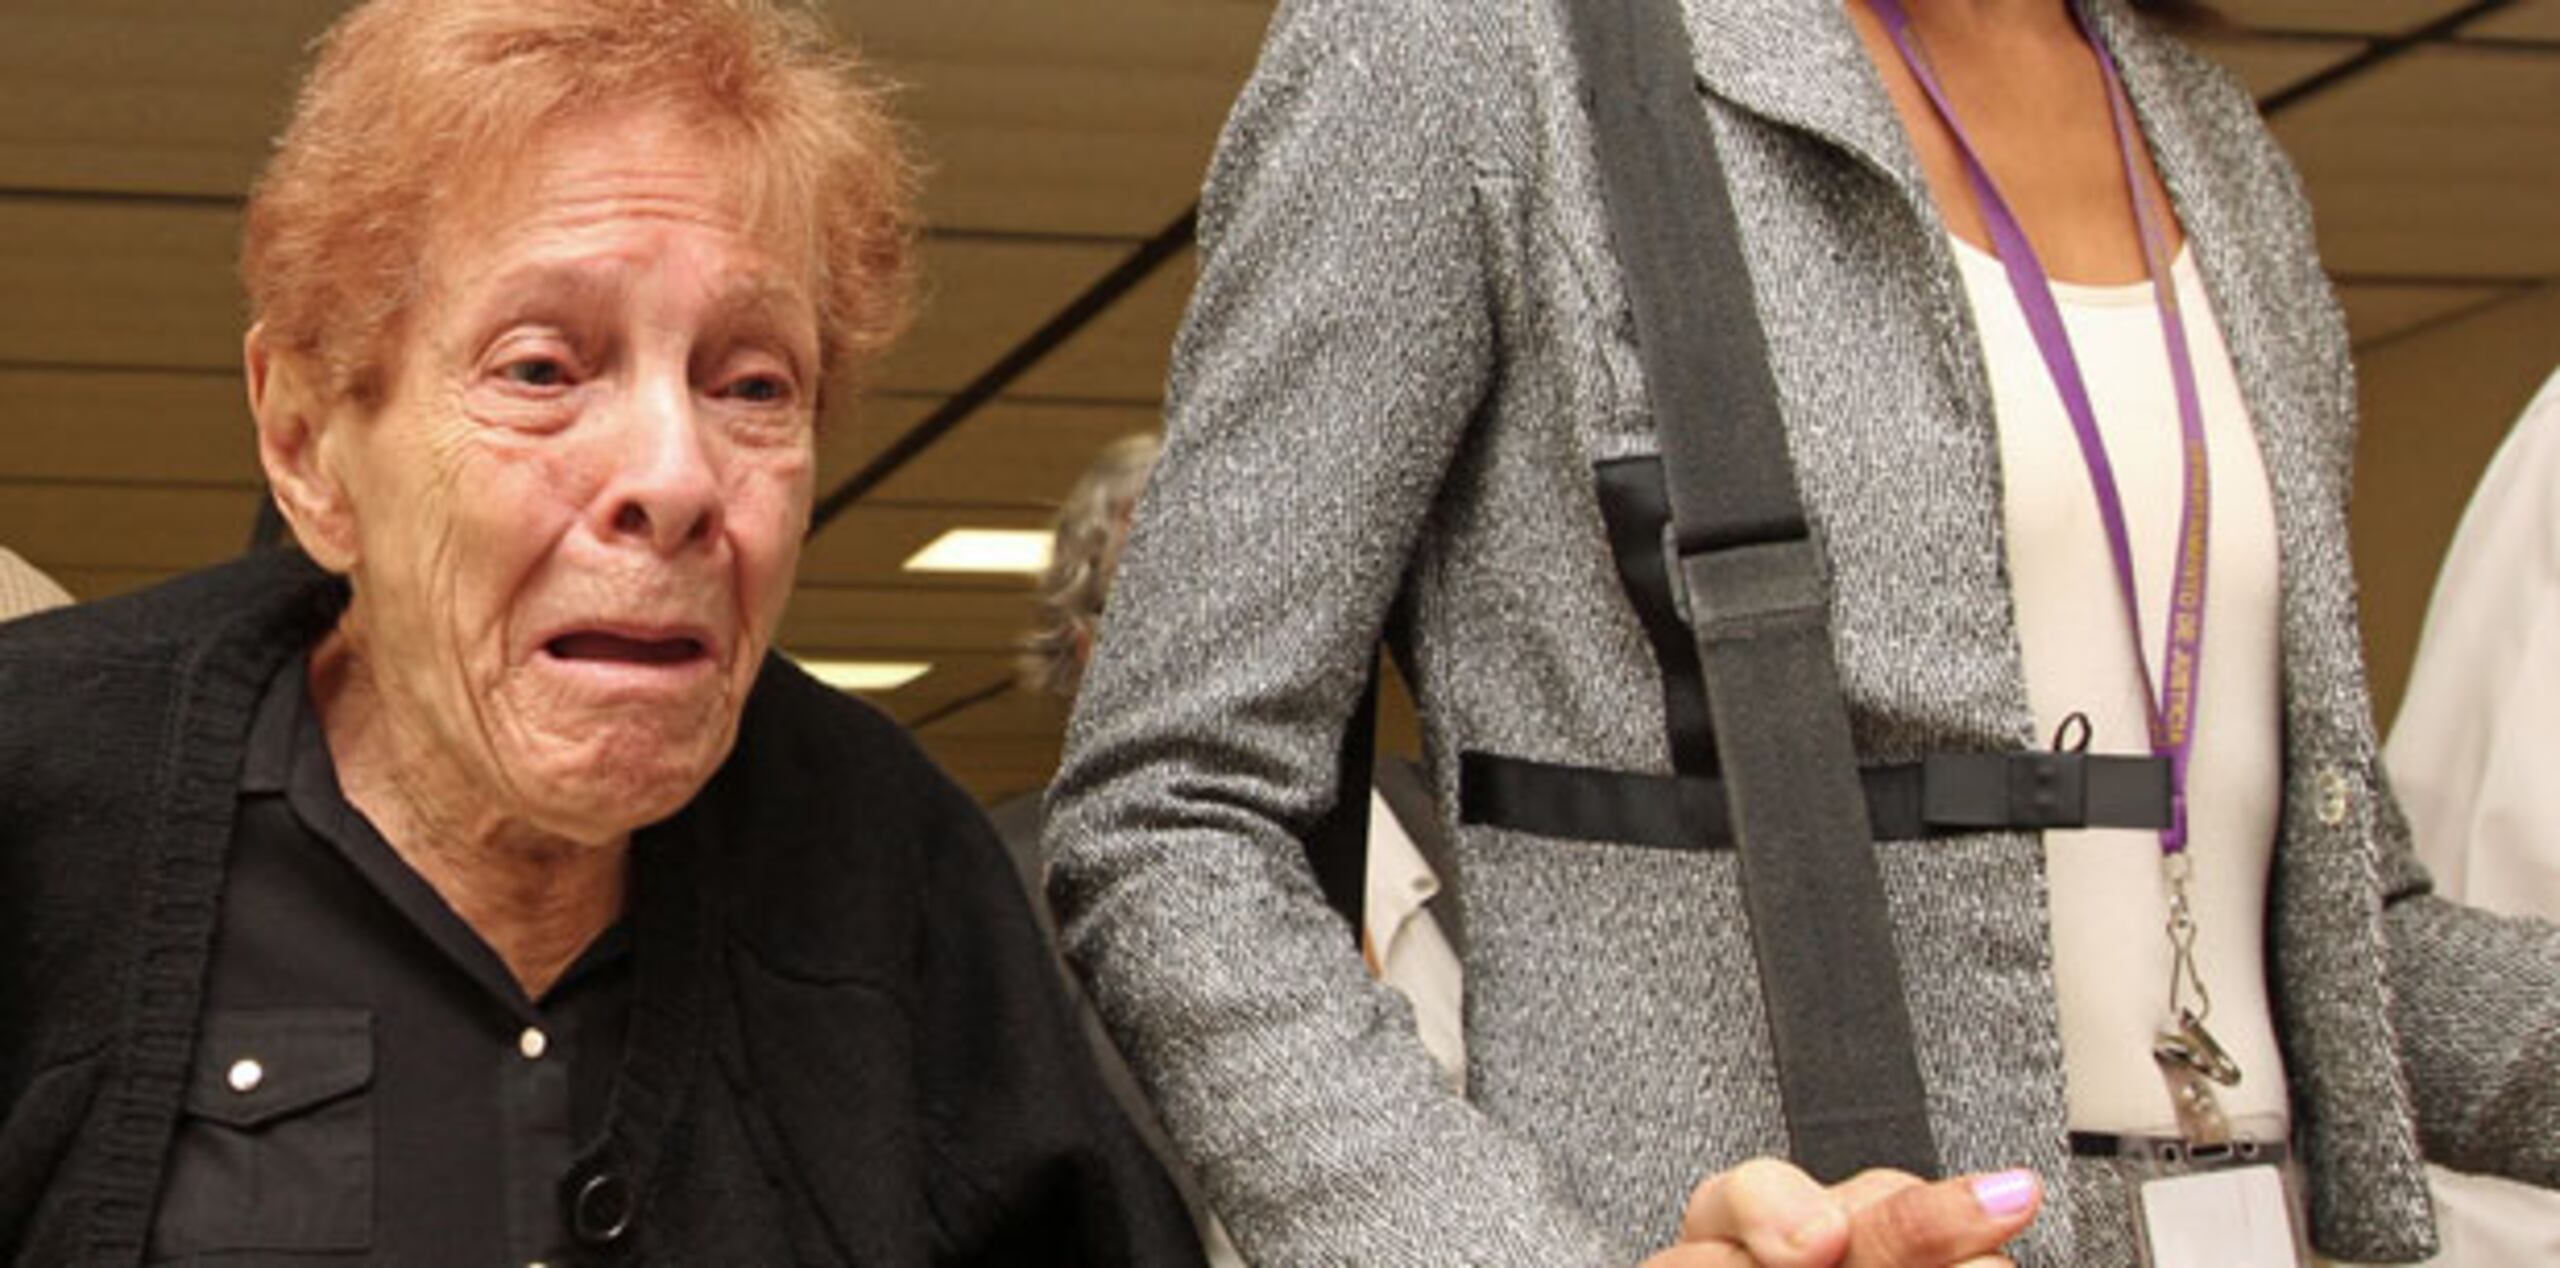 Adela Mendoza Colón, de 85 años, se encuentra recibiendo ayuda psiquiátrica y testificará en la vista preliminar contra el imputado, Gioverti García Cabello. (francisco.rodriguez@gfrmedia.com)